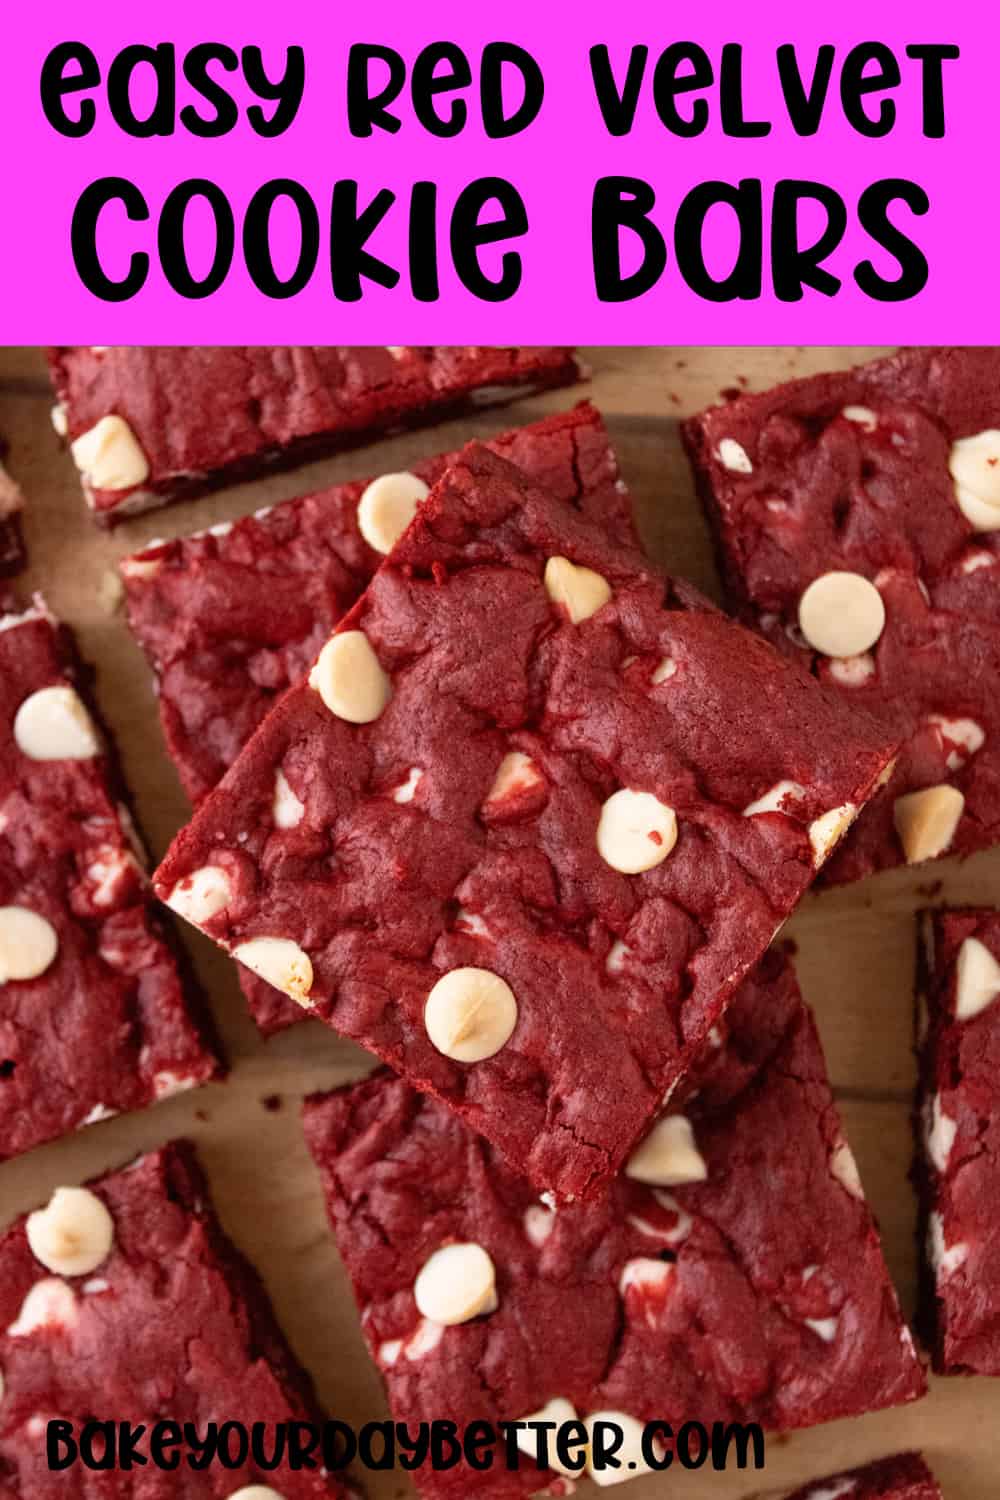 easy red velvet cookie bars - finished red velvet bars on cutting board